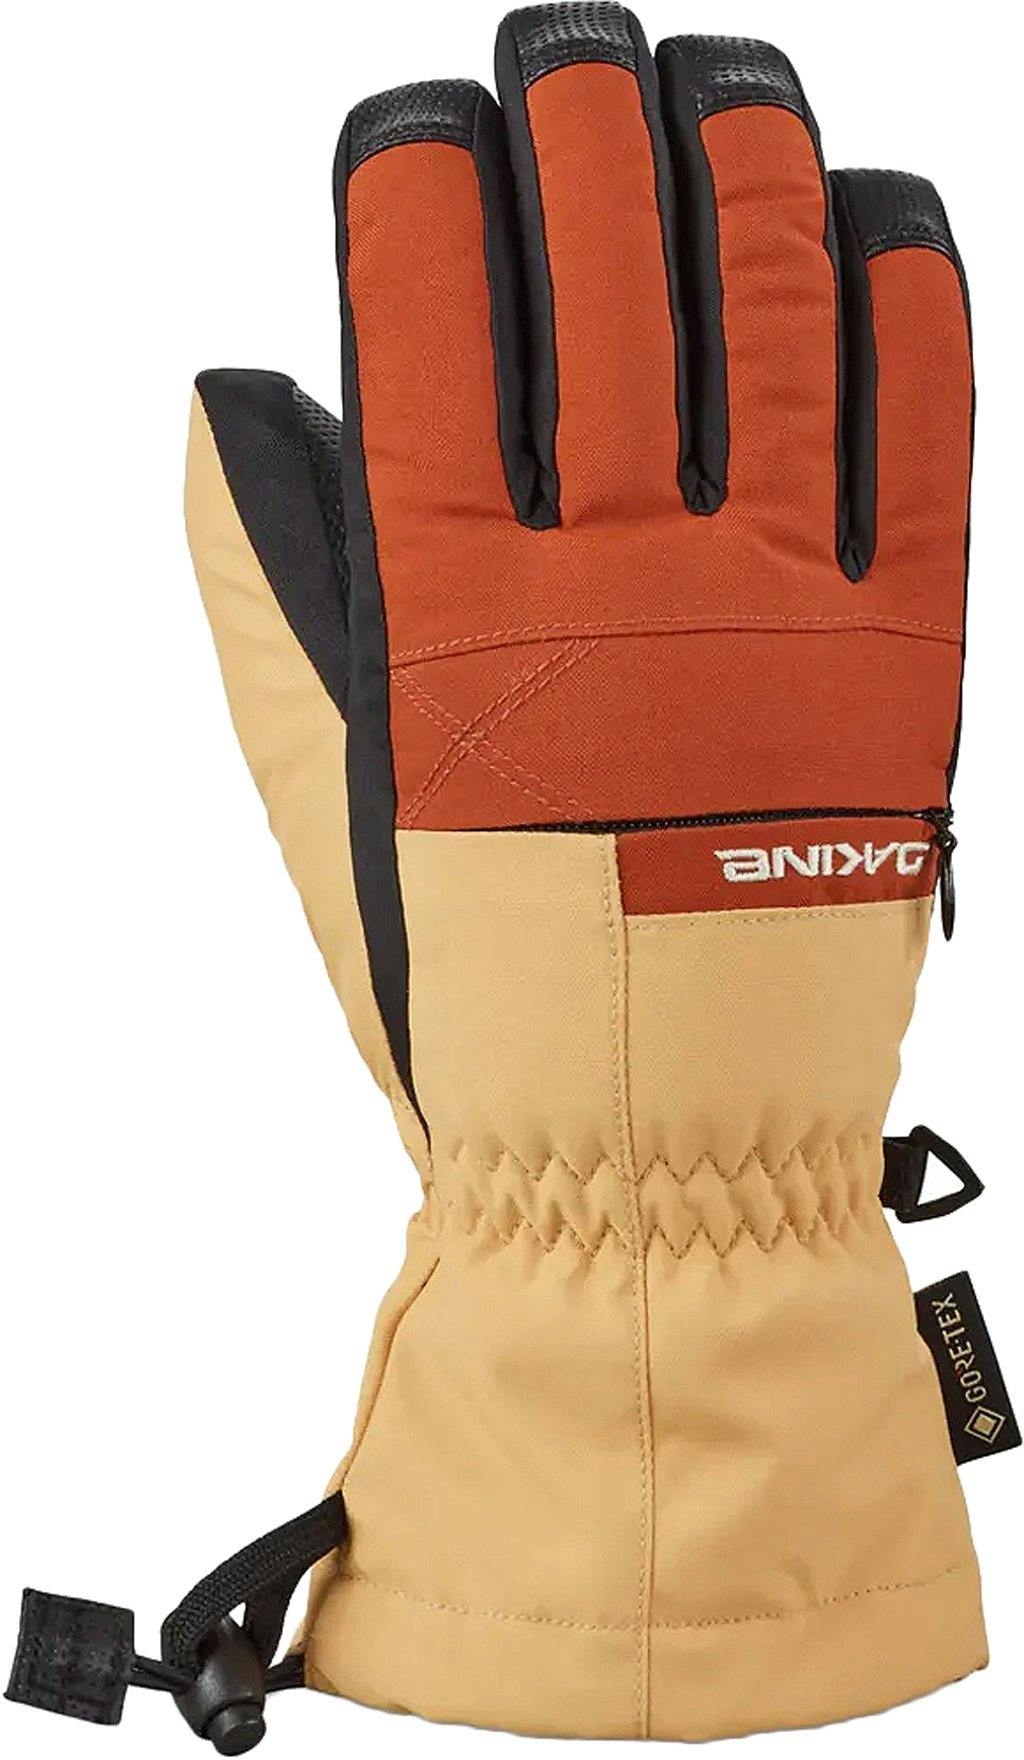 Product image for Avenger GORE-TEX Gloves - Kids